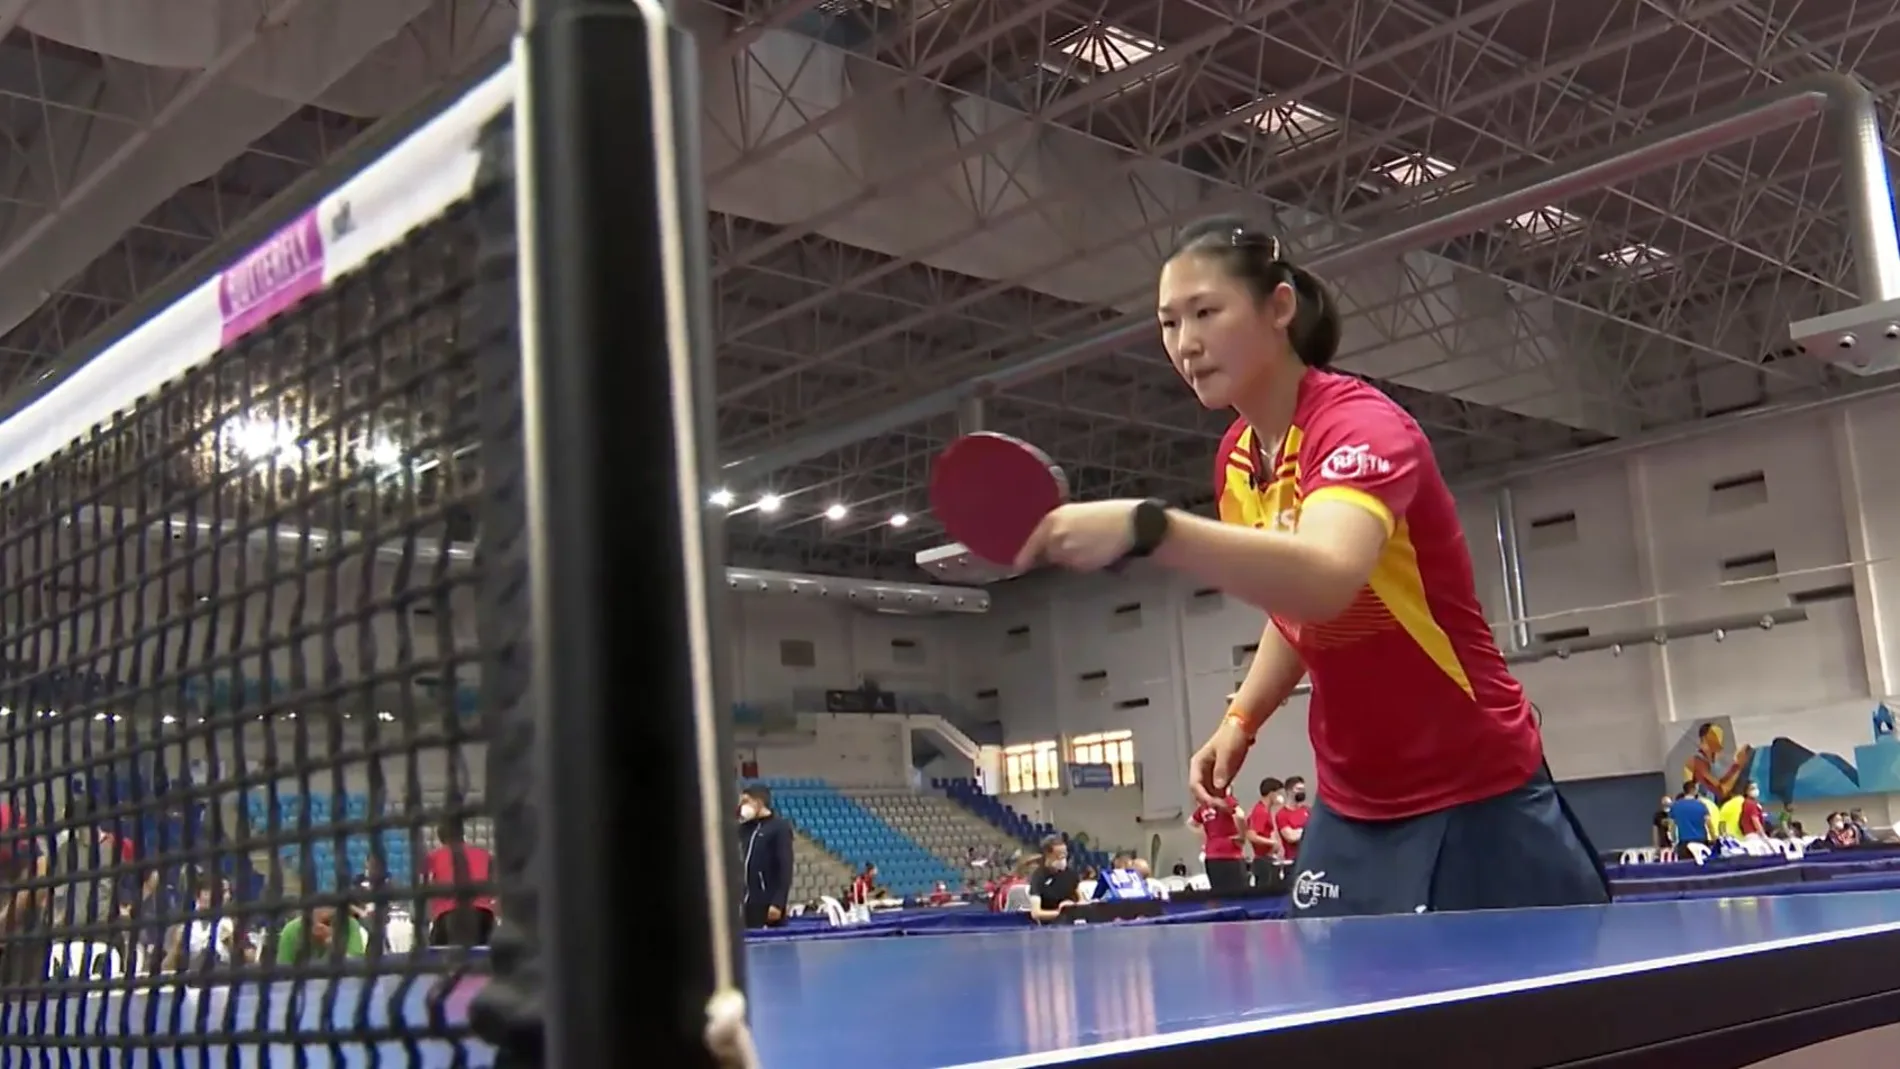 María Xiao, la esperanza española del tenis de mesa en los Juegos Olímpicos de Tokio